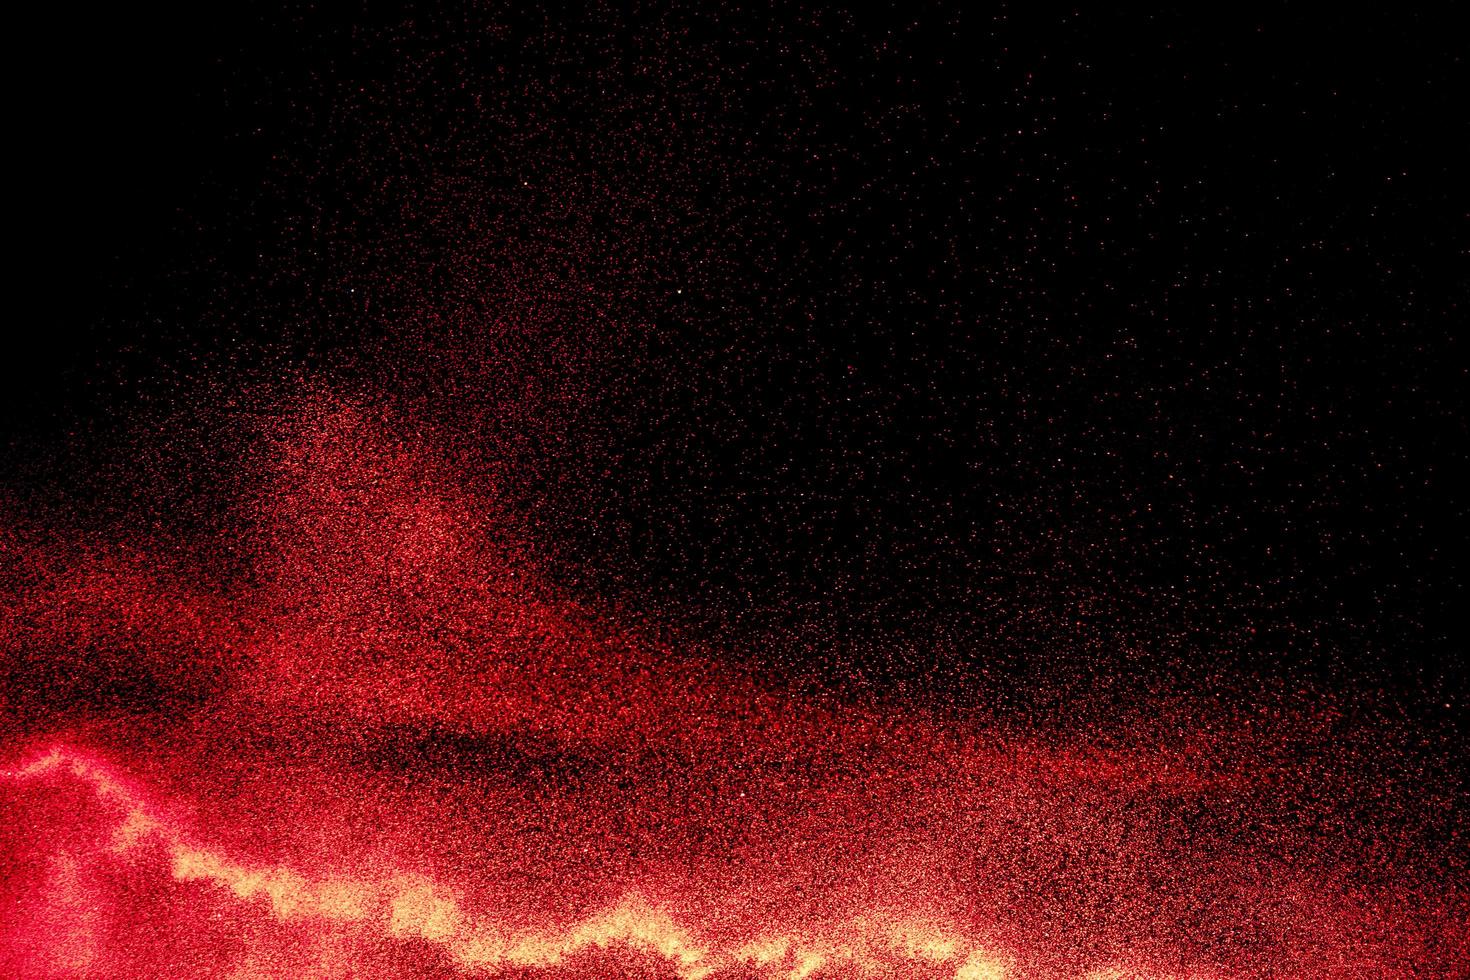 rode poederexplosie op zwarte achtergrond. bevriezen beweging van rode stofdeeltjes spatten. foto